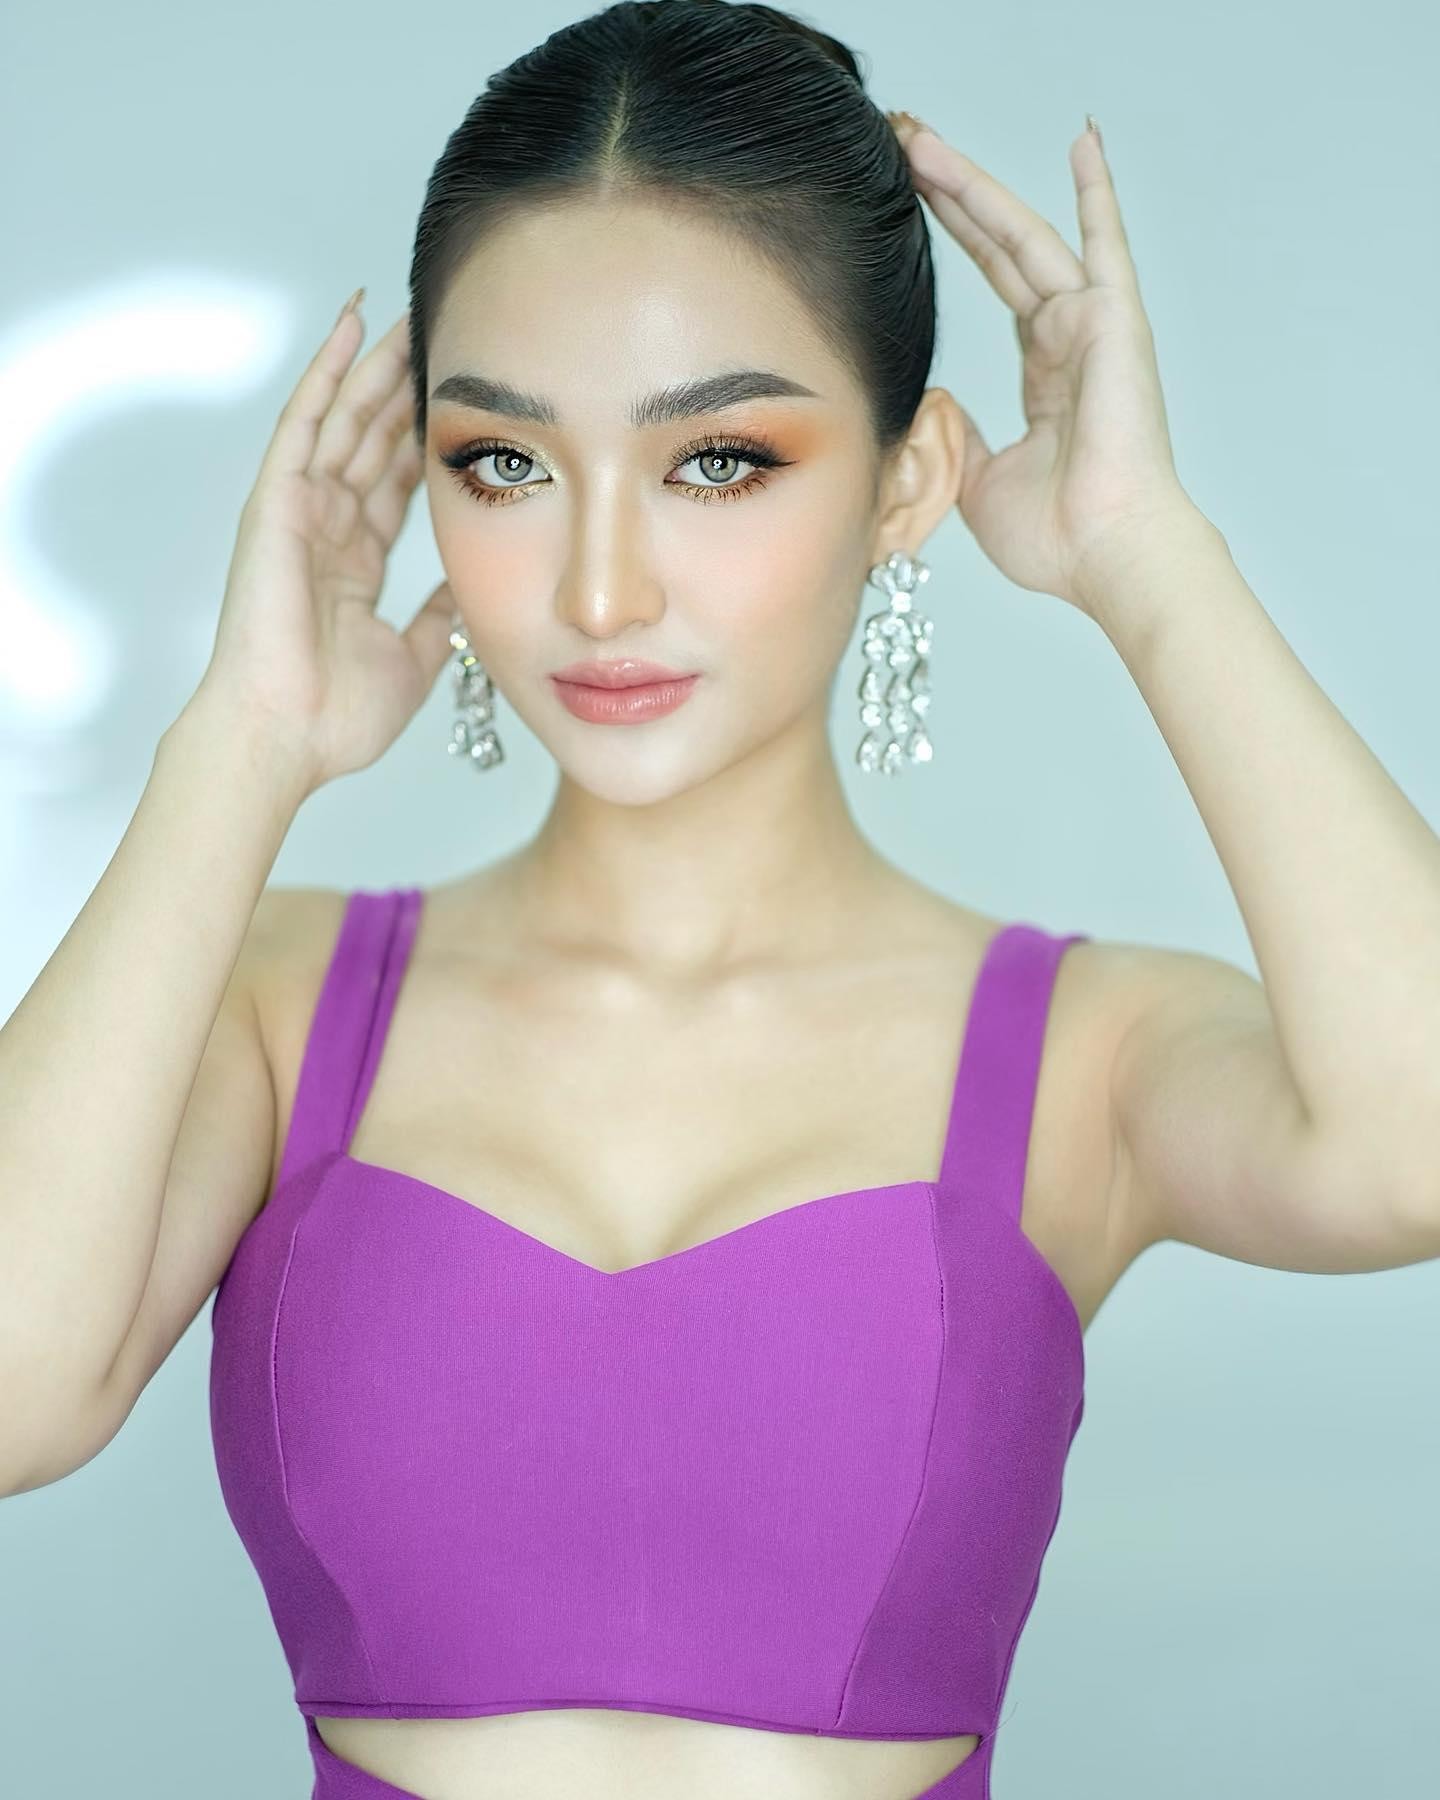 Tân Hoa hậu Hoà bình Campuchia lộ diện cực sexy, mặc cut-out táo bạo không kém Thuỳ Tiên - Ảnh 4.